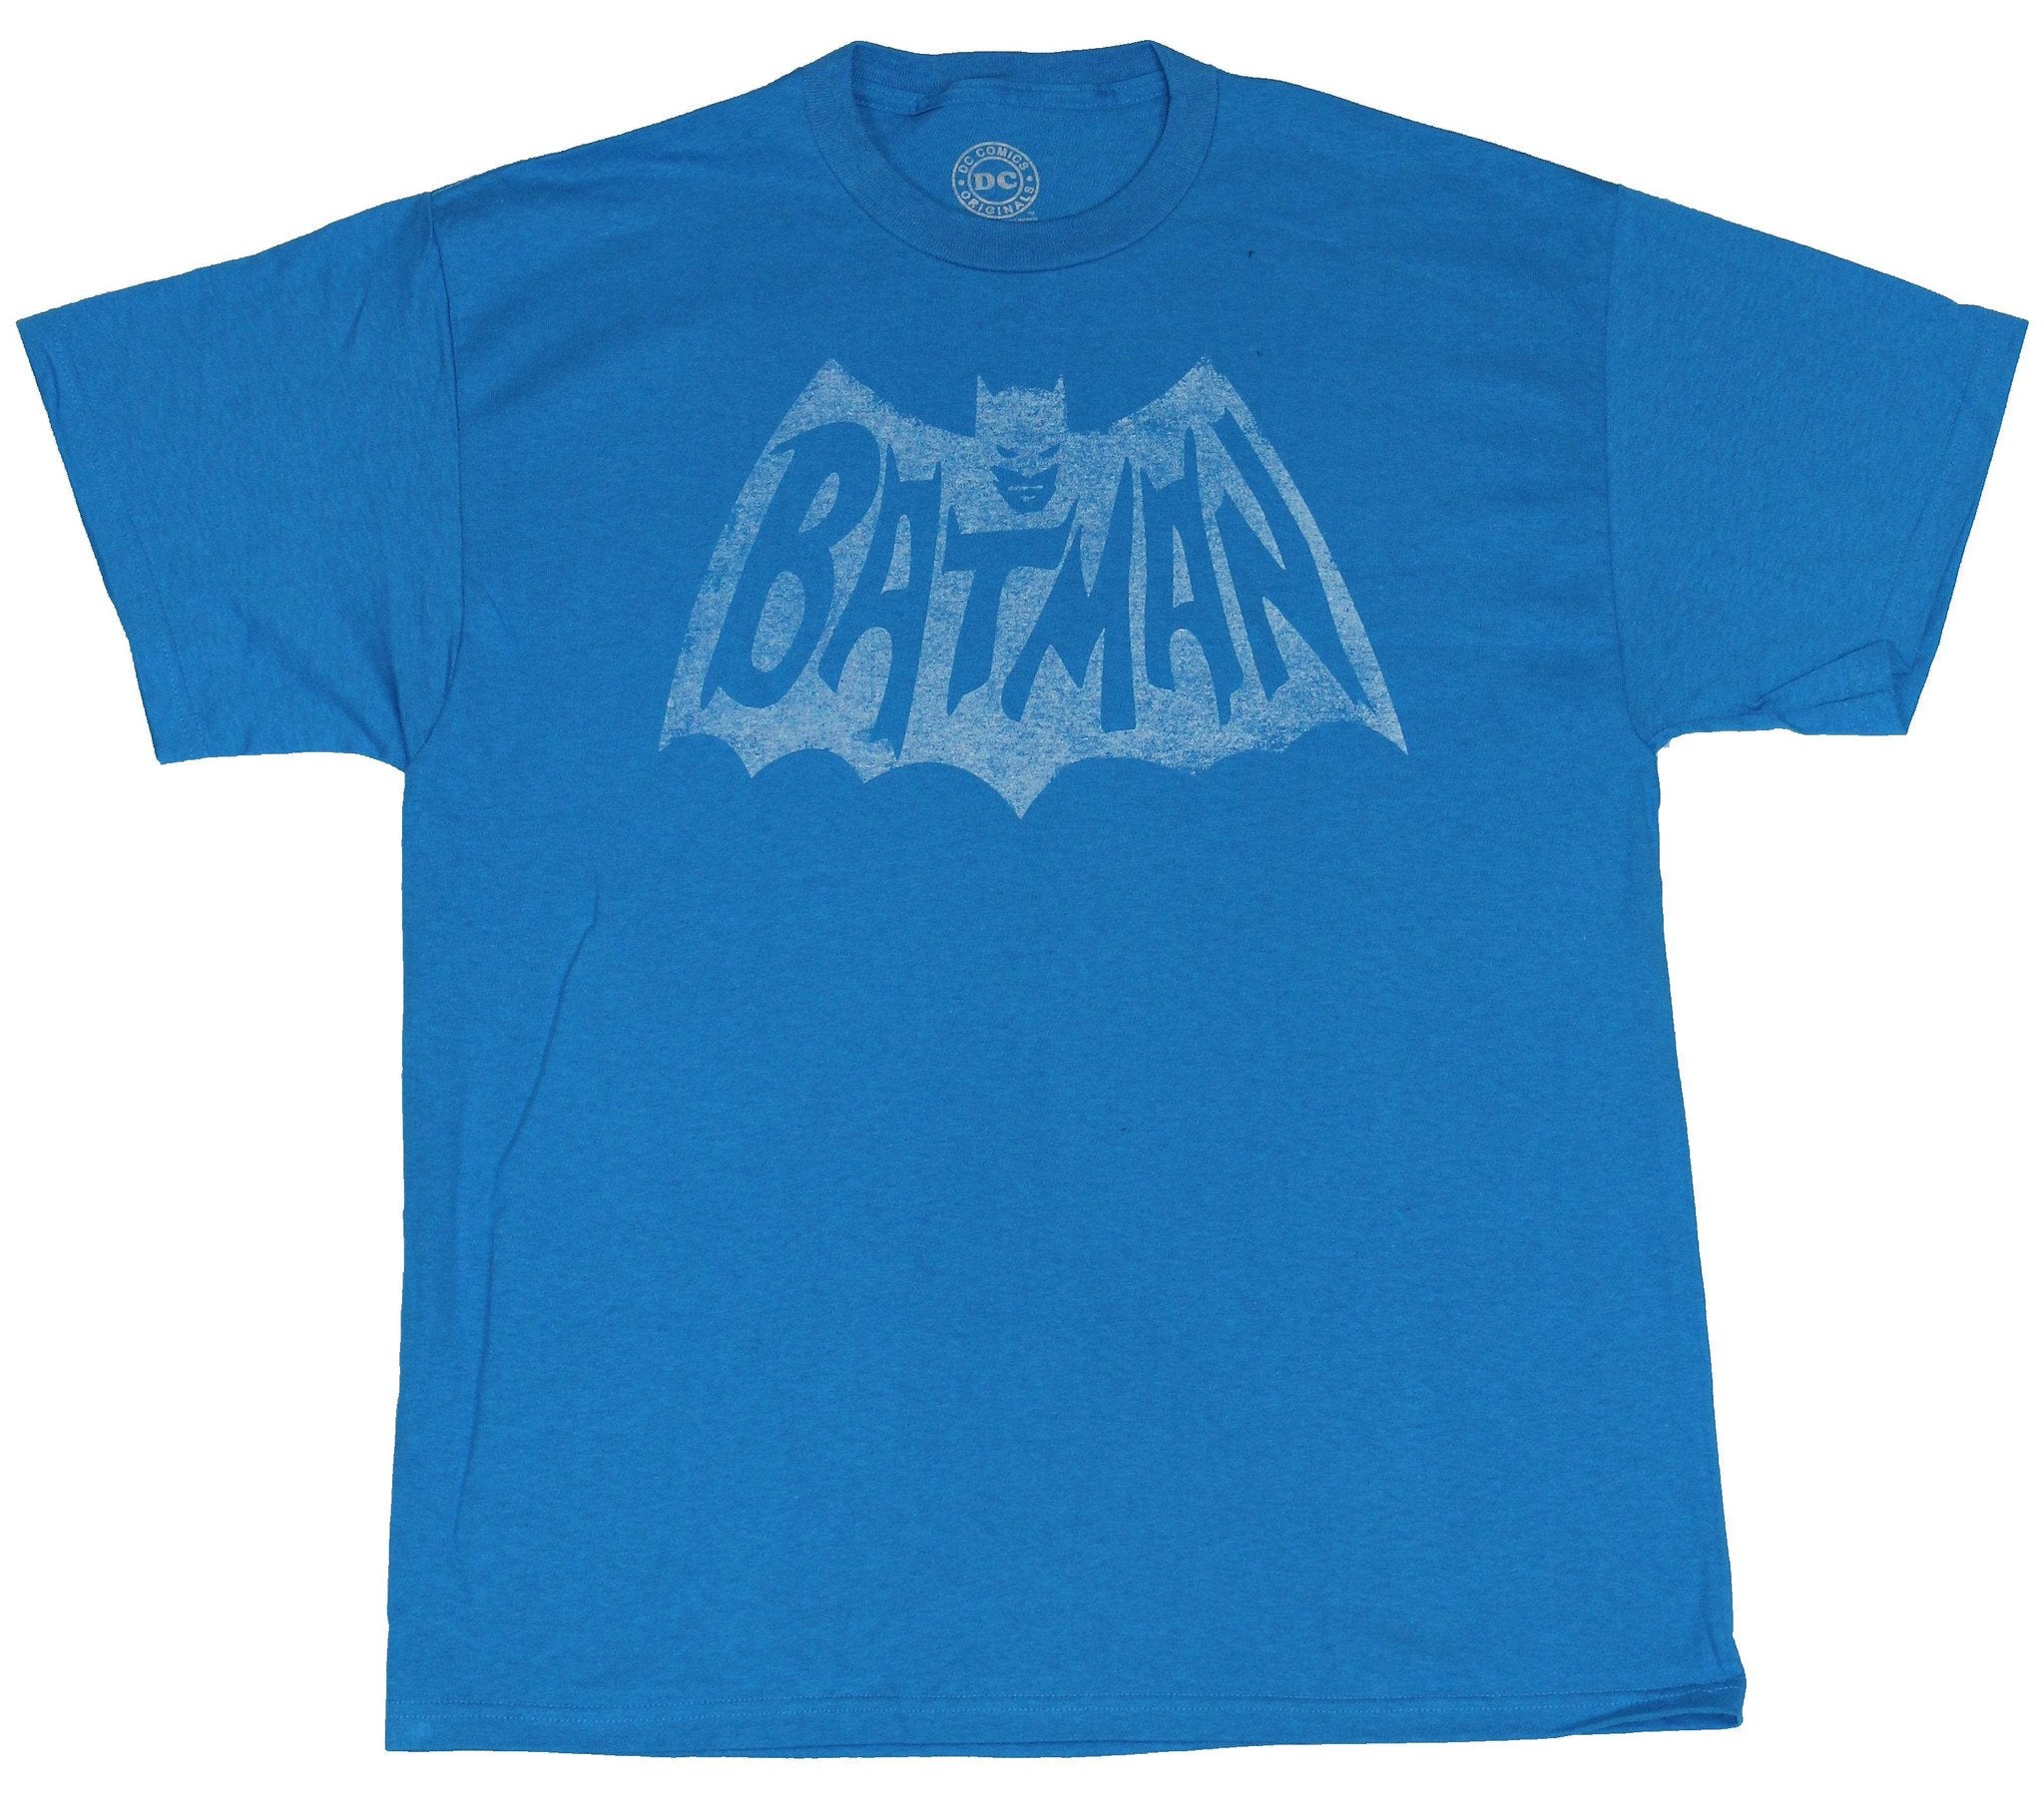 Batman (DC Comics) Mens T-Shirt - Distressed Single Color Print 60's S